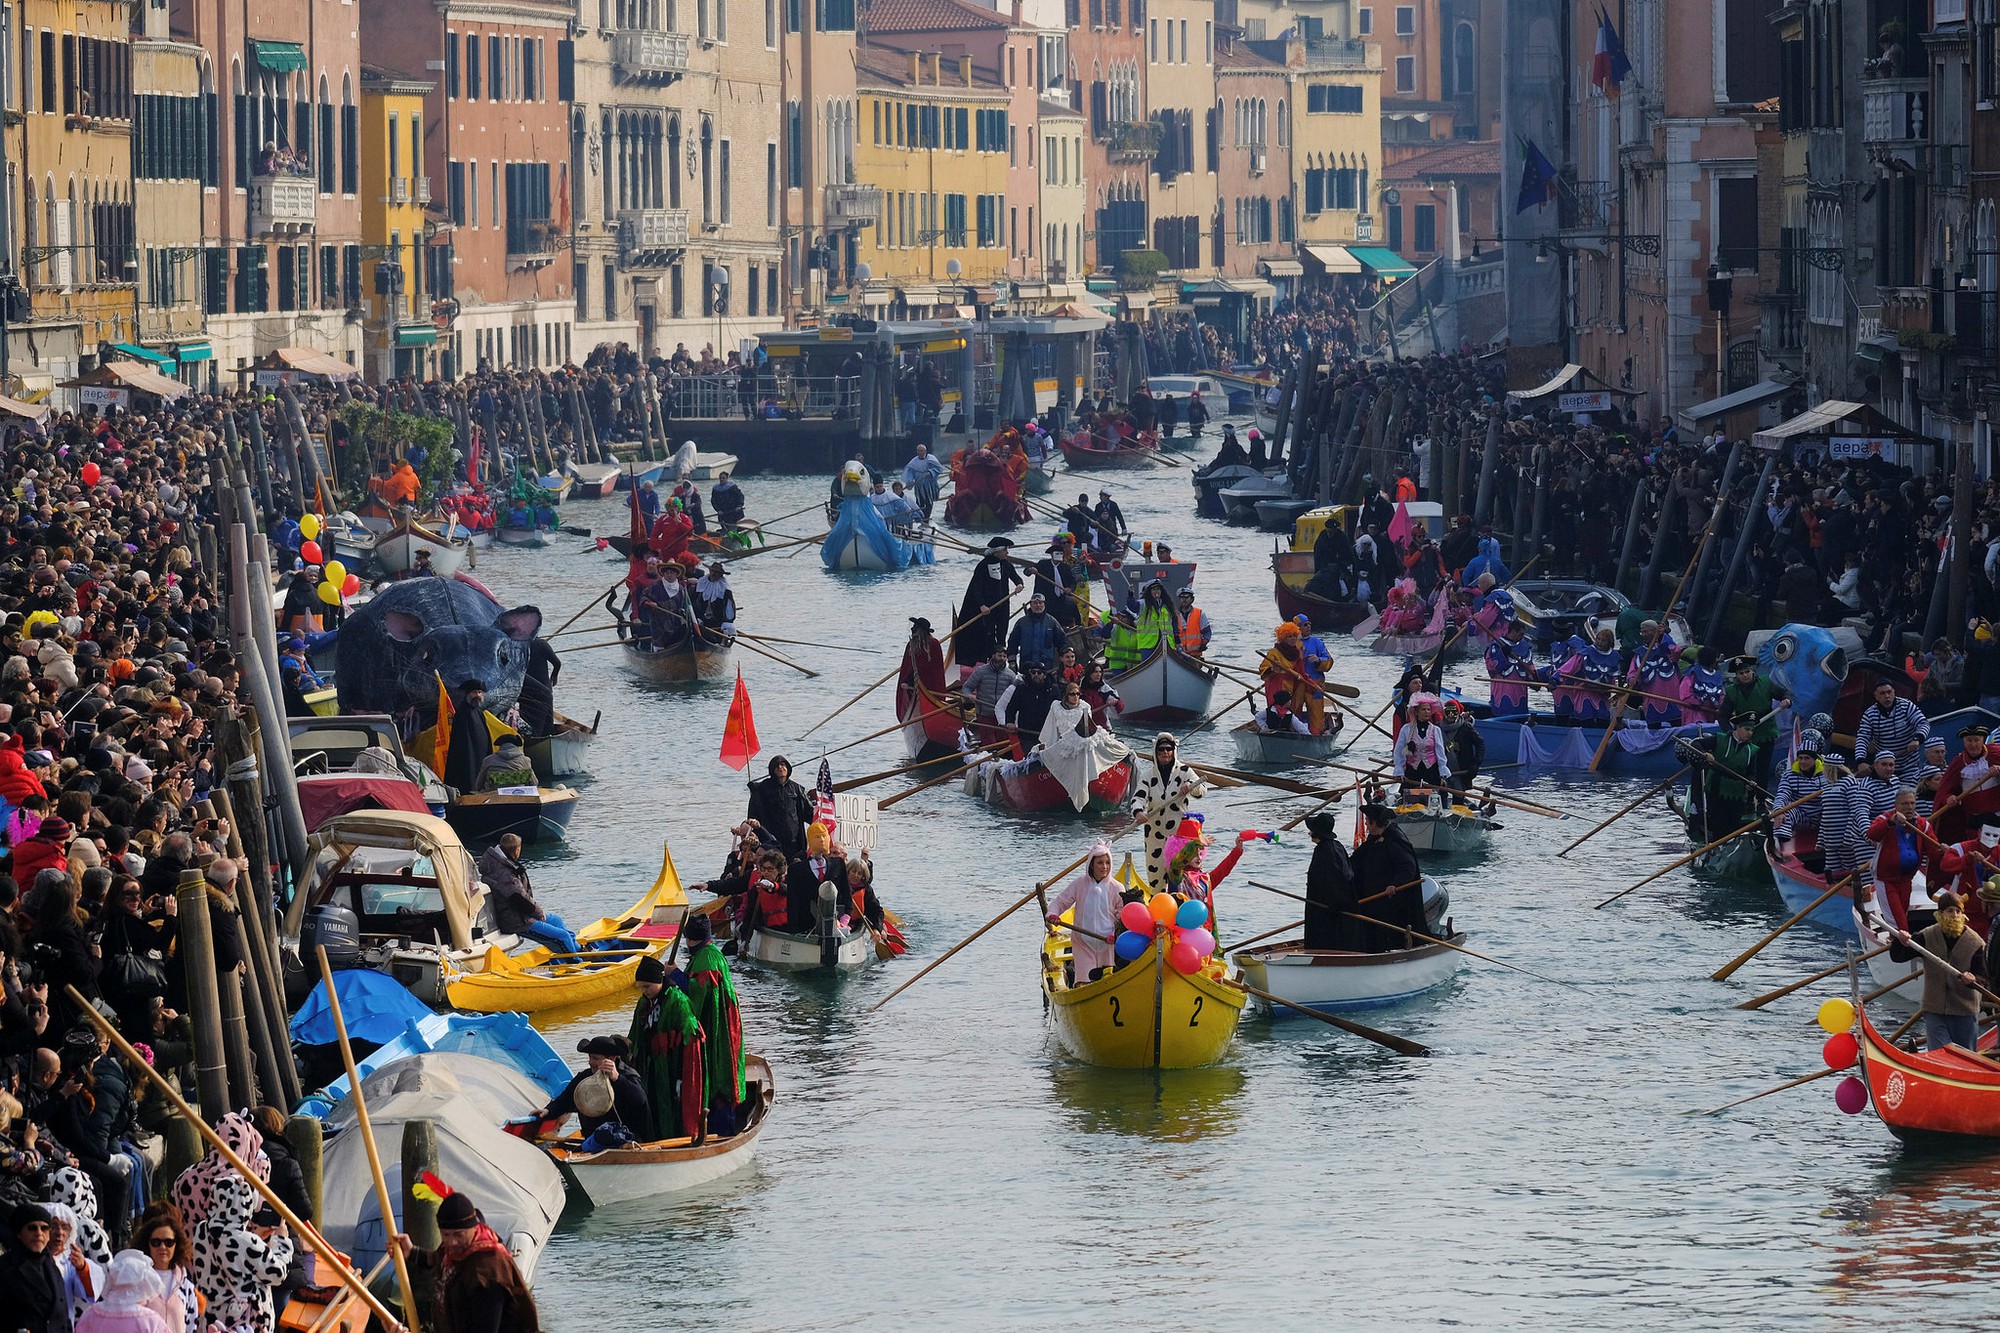 Venice của thời hiện tại 'Rẻ tiền' trong mắt khách hạng sang và quá xô